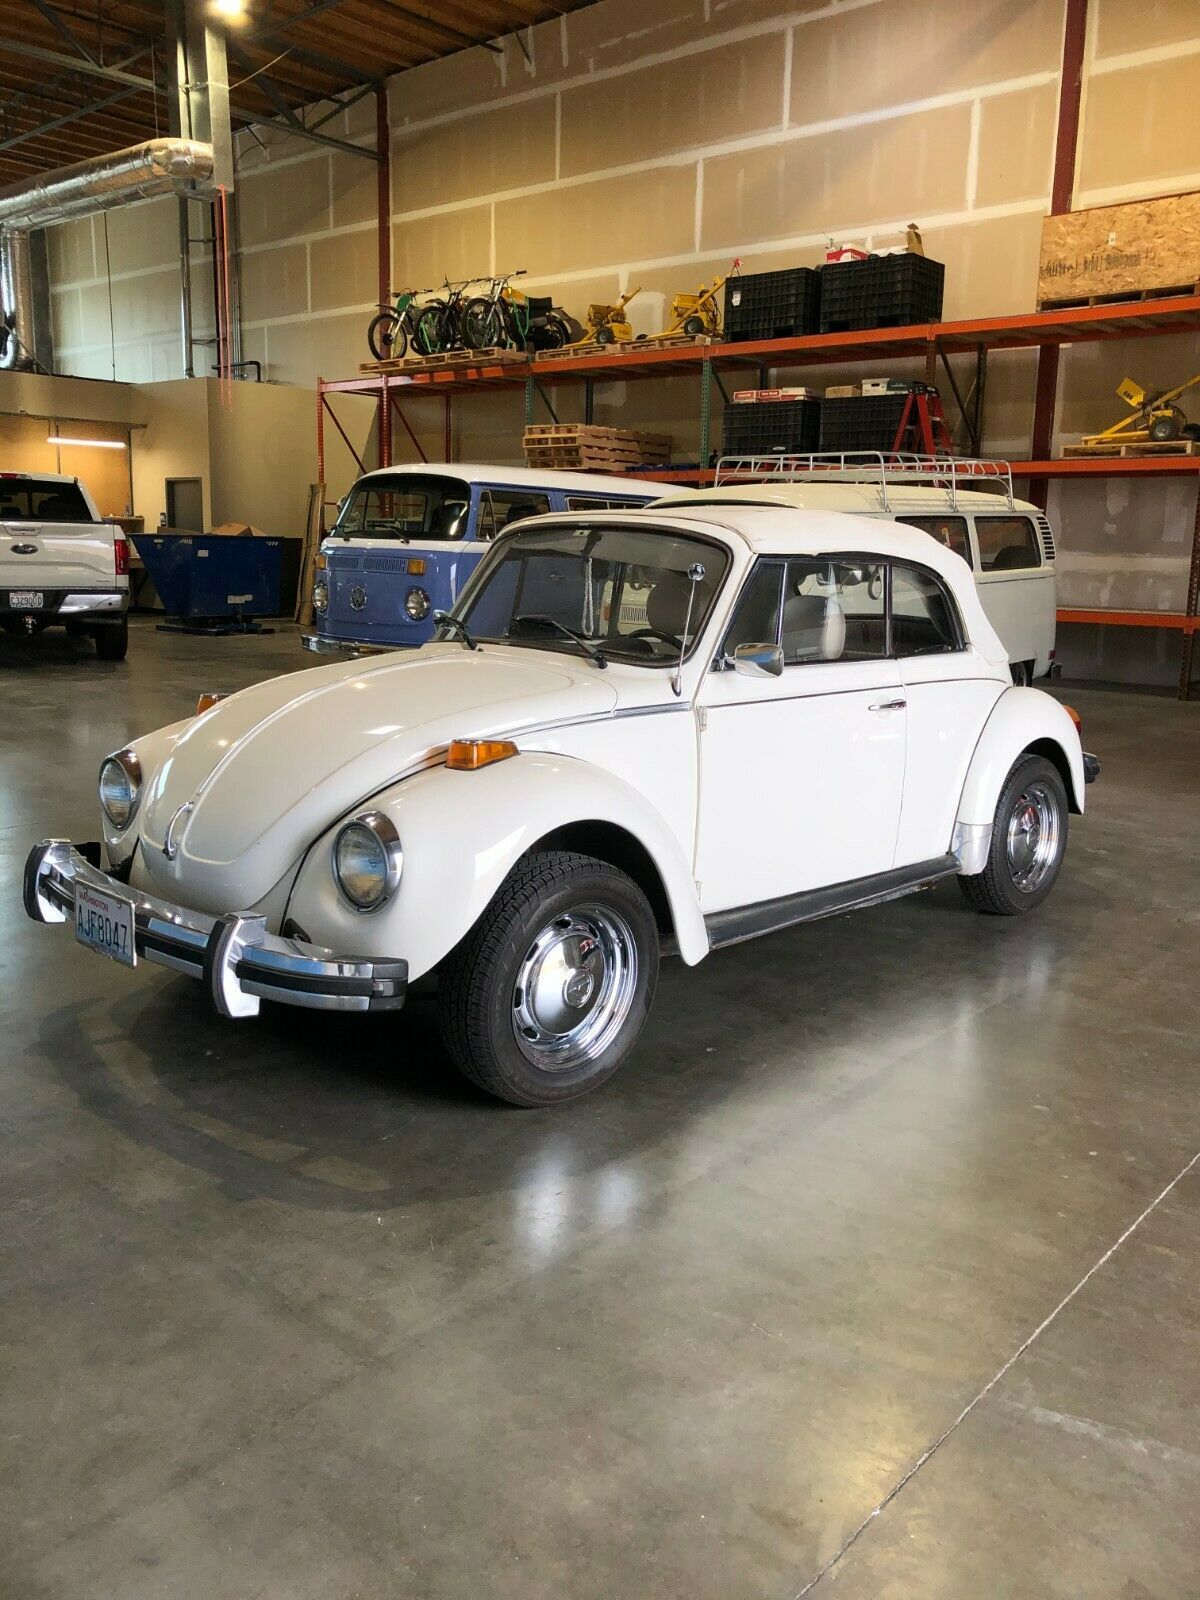 1976 Volkswagen Beetle - Classic Convertible